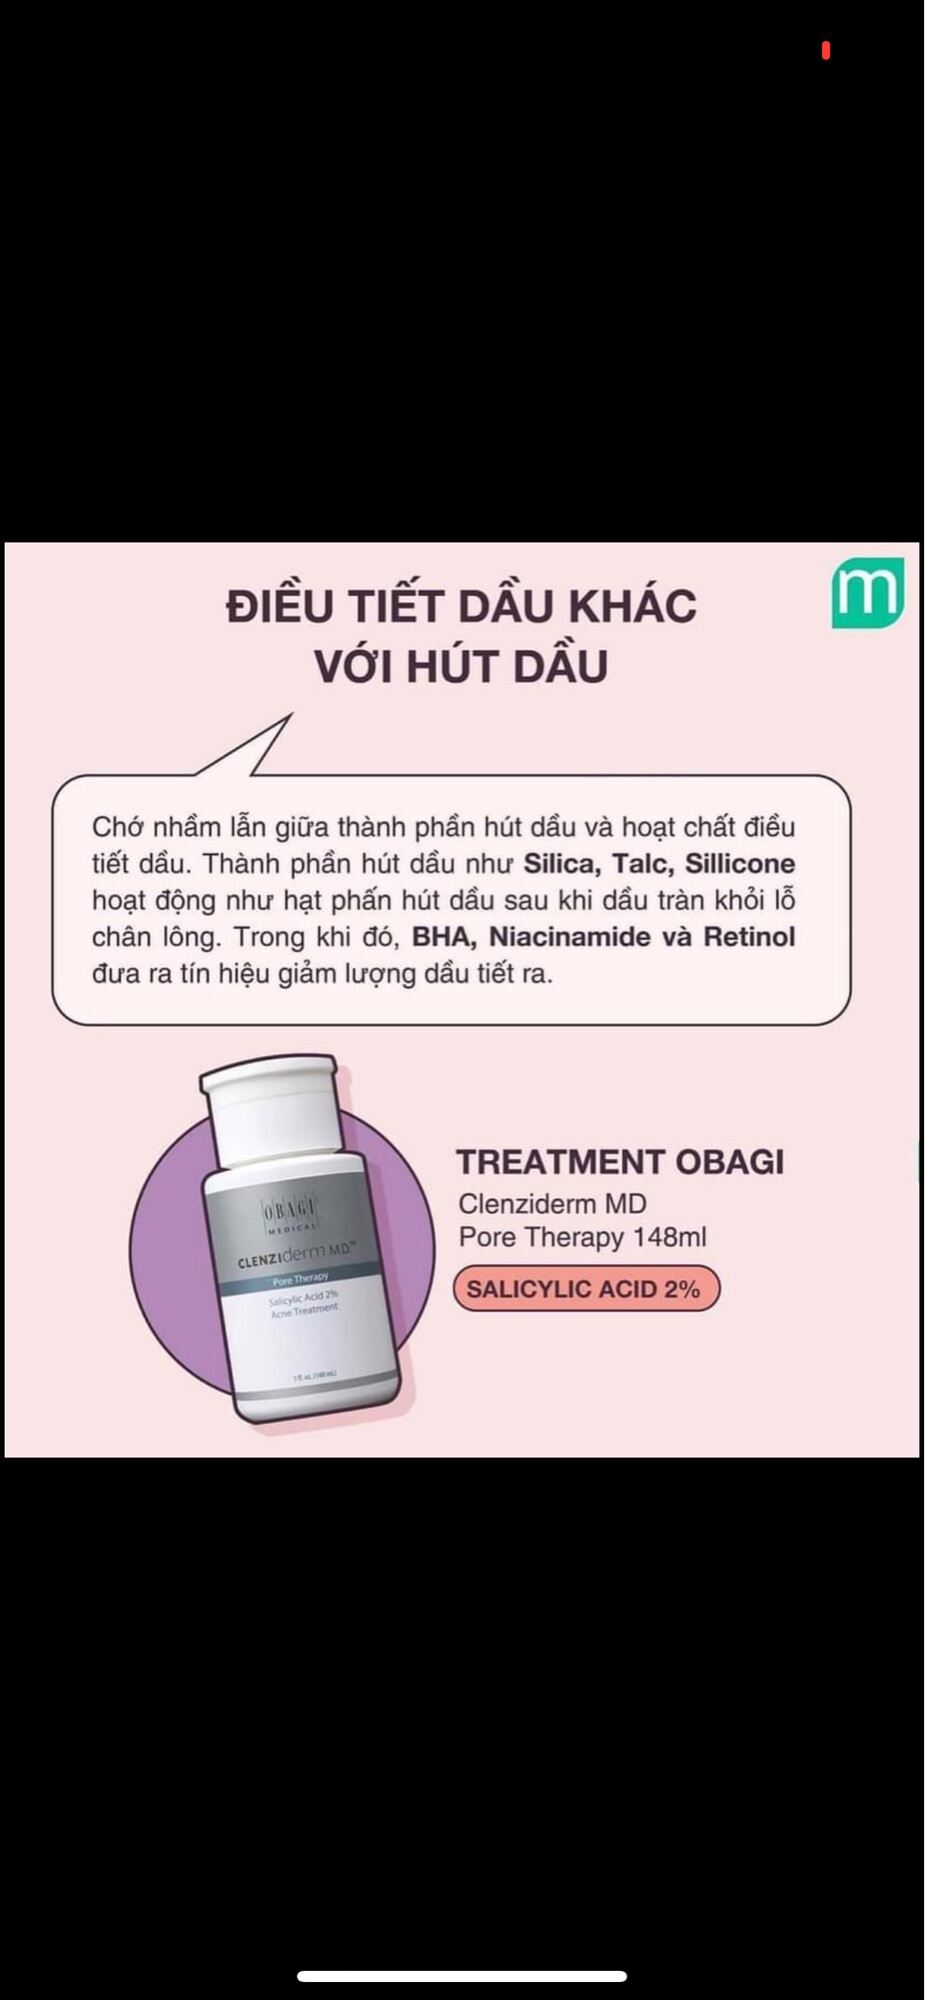 Dung dịch BHA giúp giảm mụn, dầu nhờn Obagi Clenziderm MD Pore Therapy 148ml